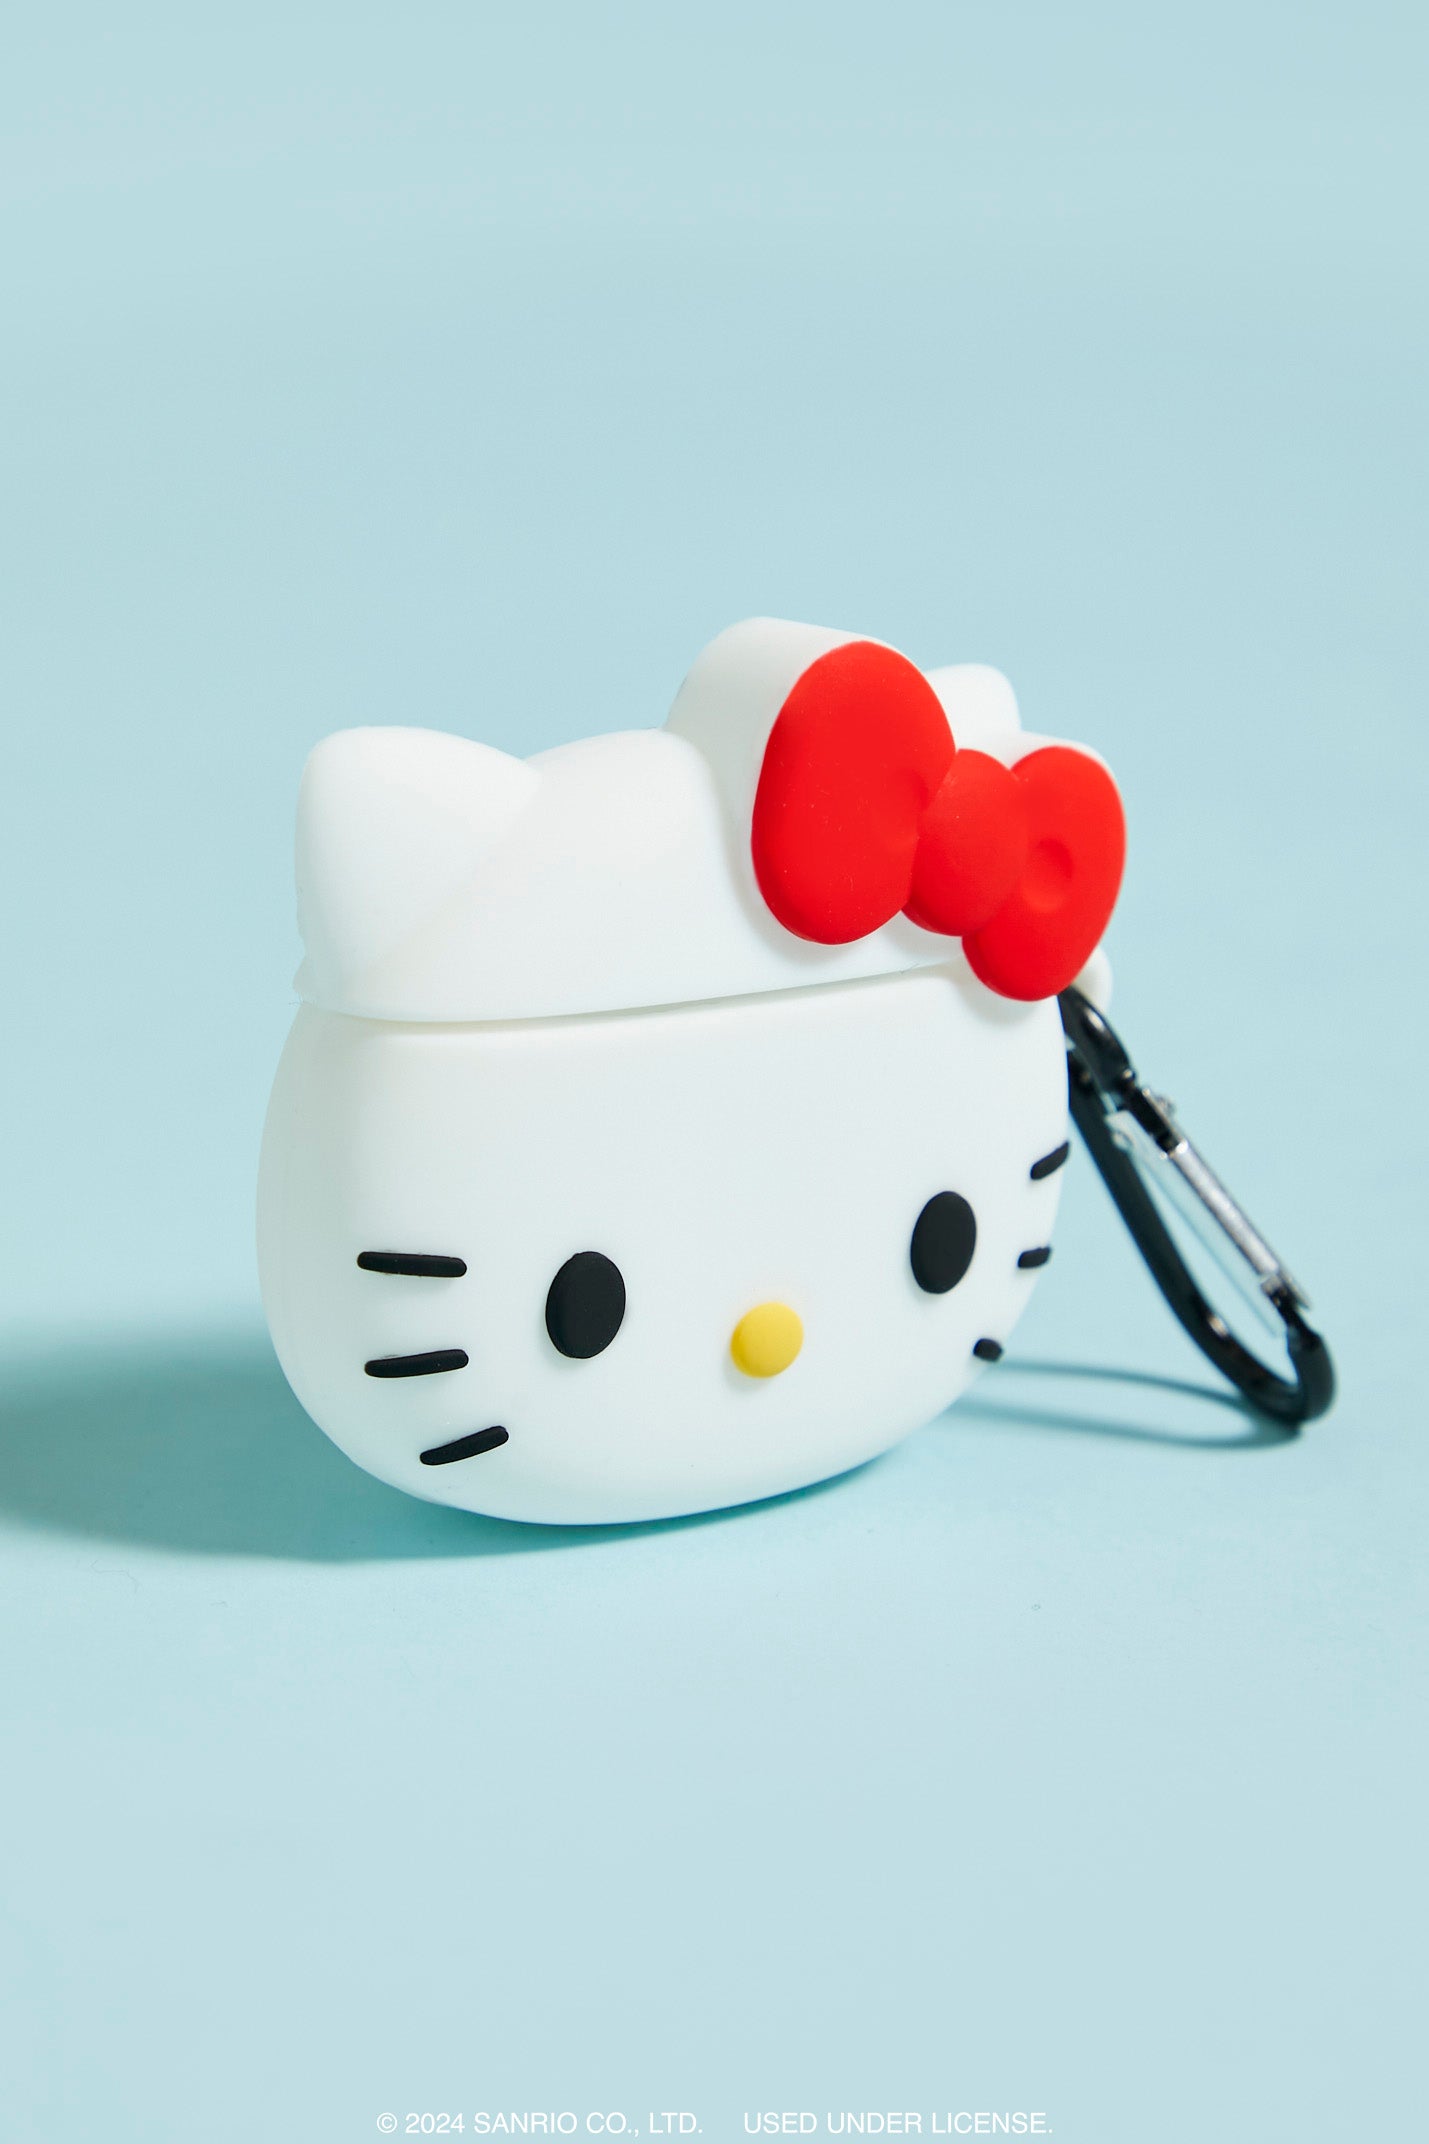 Hello Kitty Wireless Earbud Case